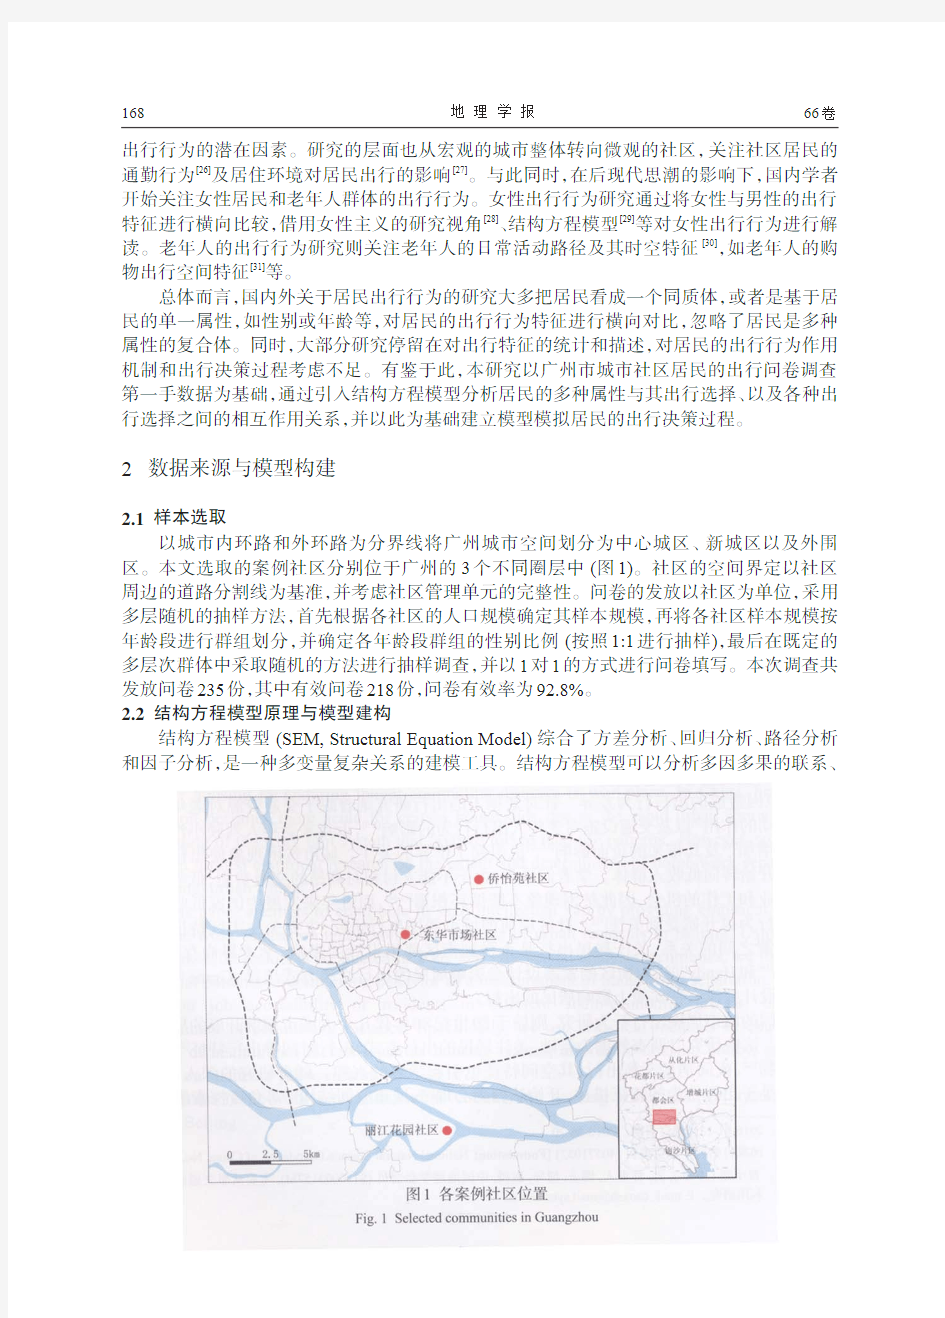 基于结构方程模型的广州城市社区居民出行行为